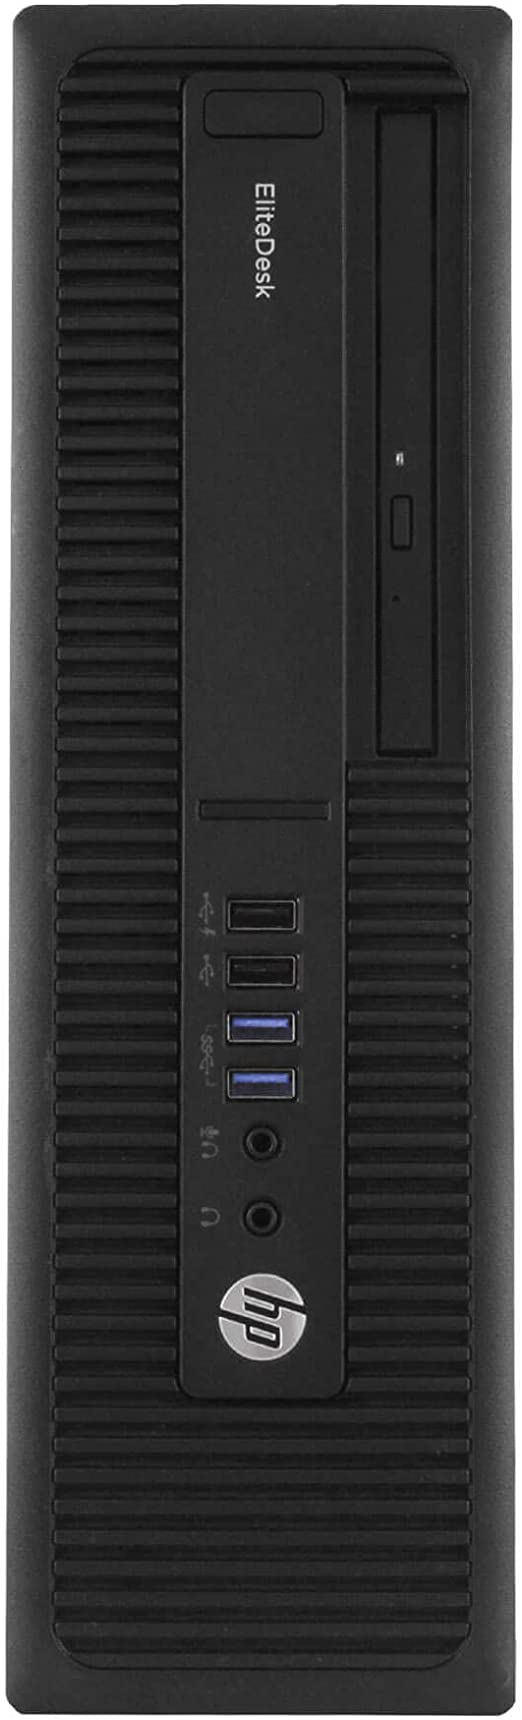 HP EliteDesk 800 G2 SFF with 24 Inch Monitor Desktop i5-6500 U, 8GB RAM, 128GB SSD + 1TB HDD, Windows 10 Pro